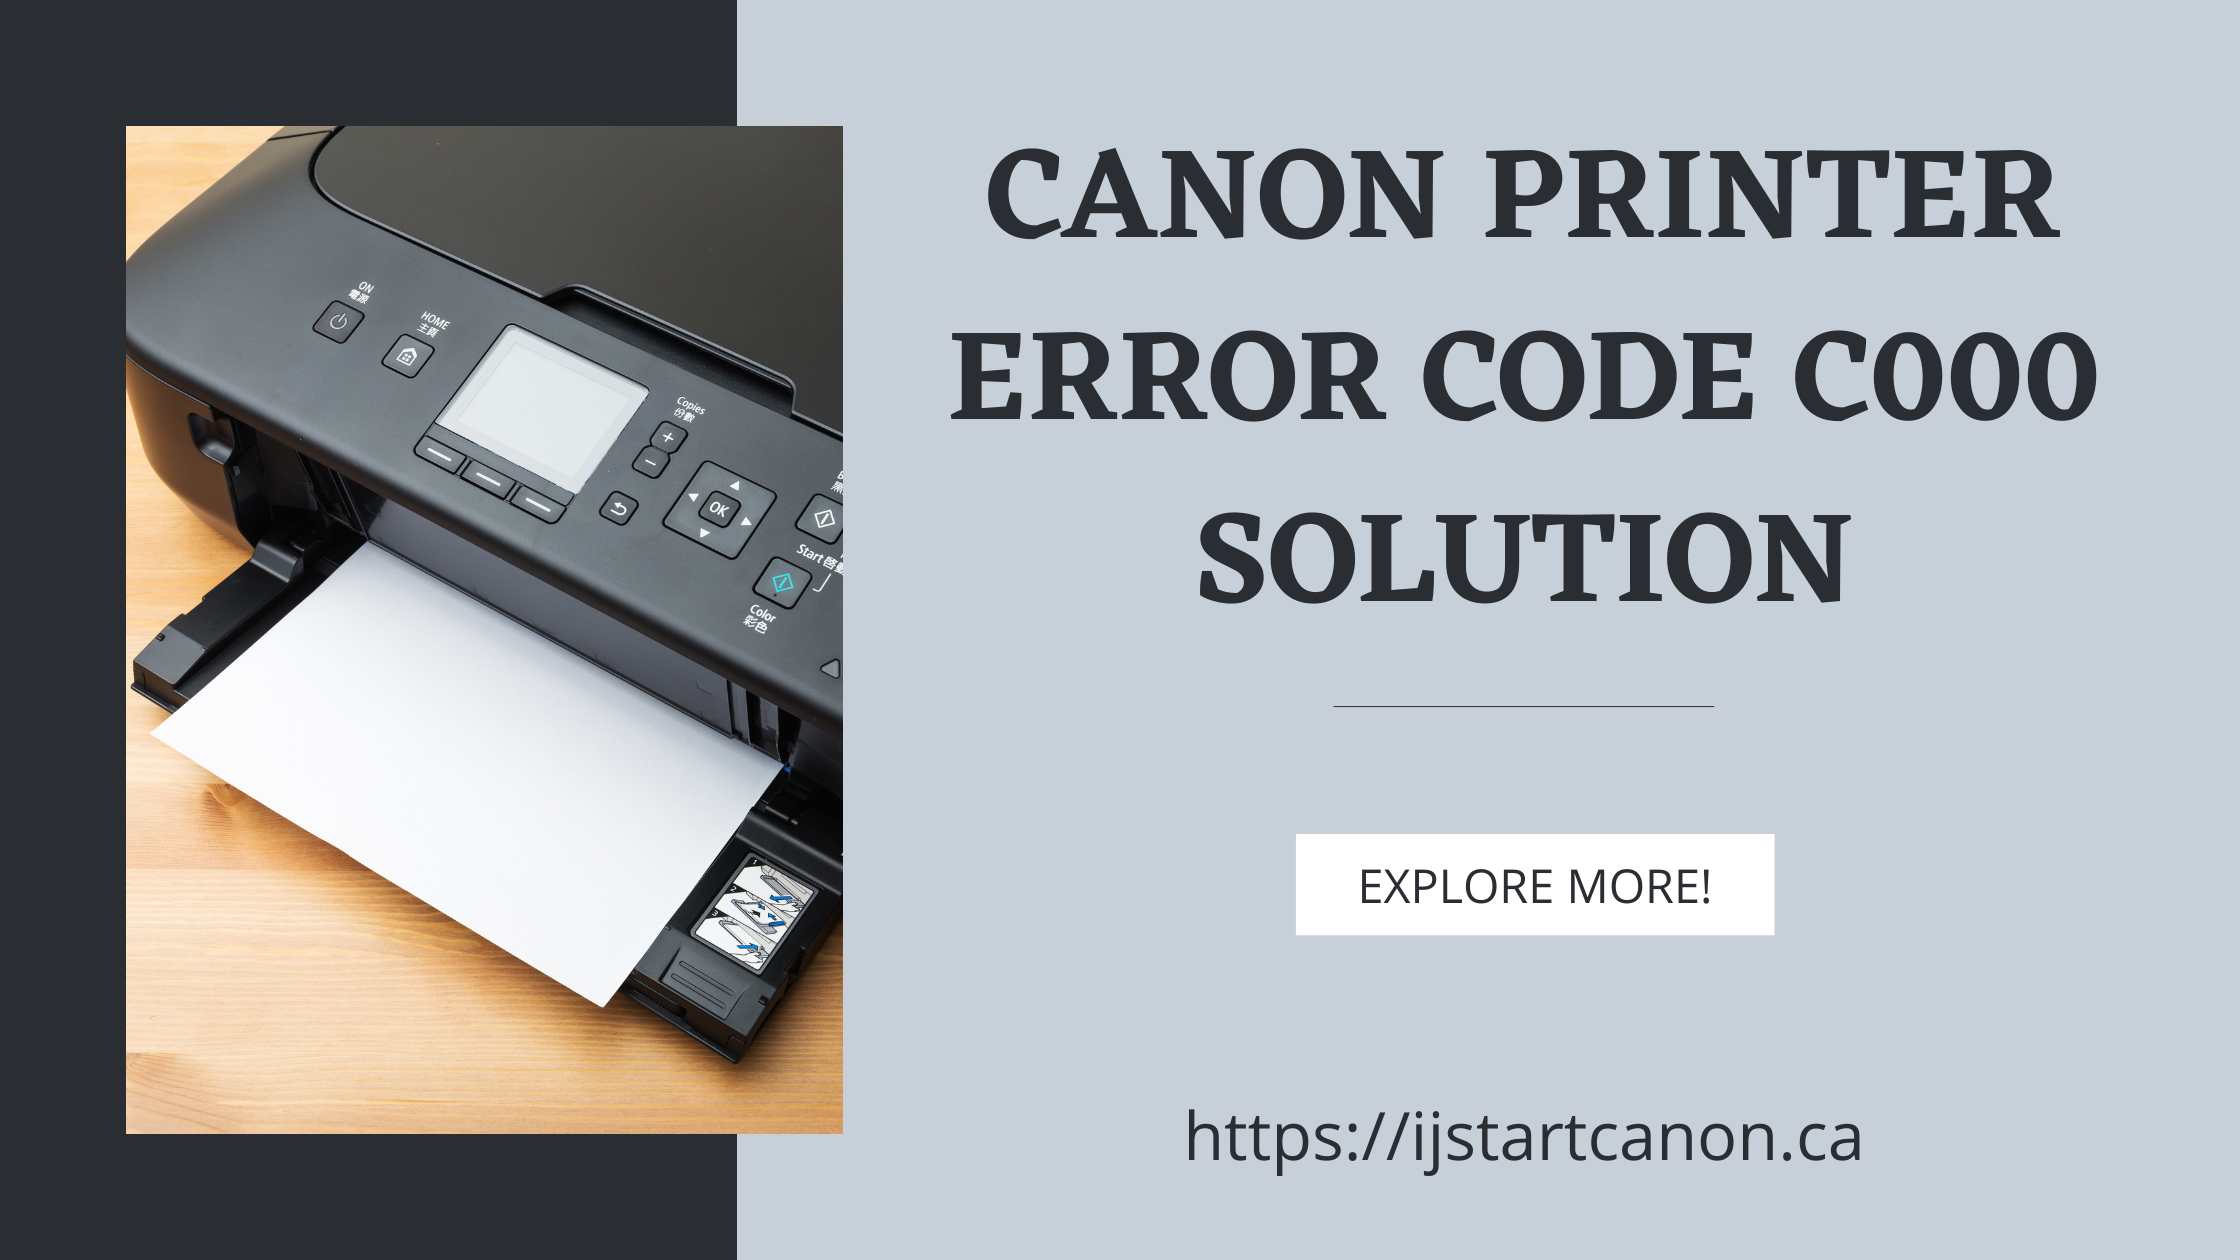 Solution for Canon Printer Error Code C000